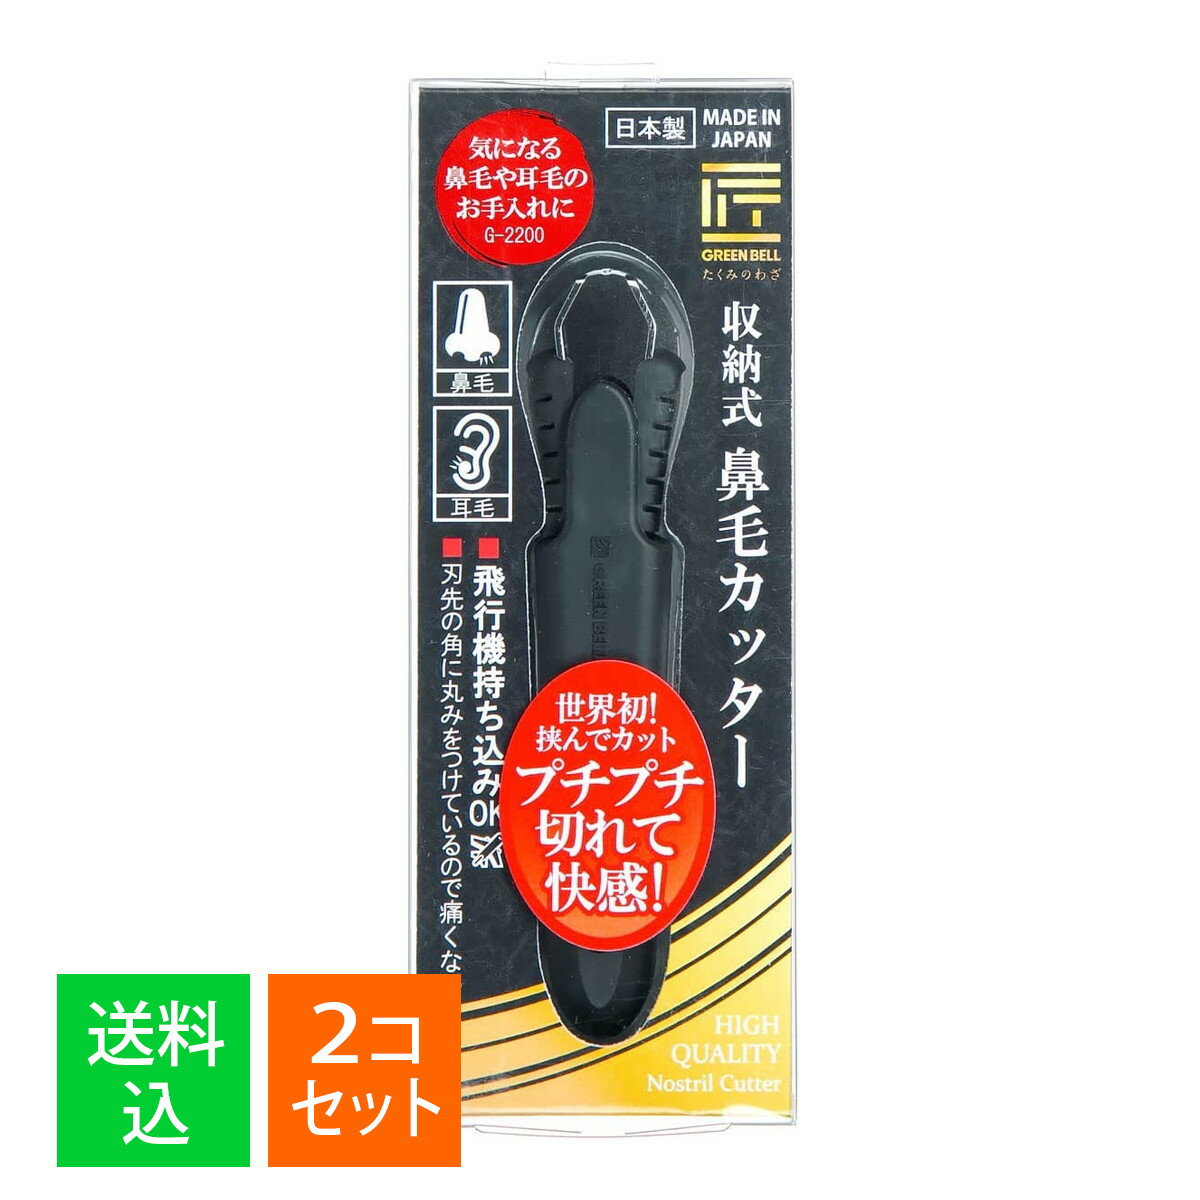 【×2個セット メール便送料無料】グリーンベル G-2200 匠の技 収納式鼻毛カッター